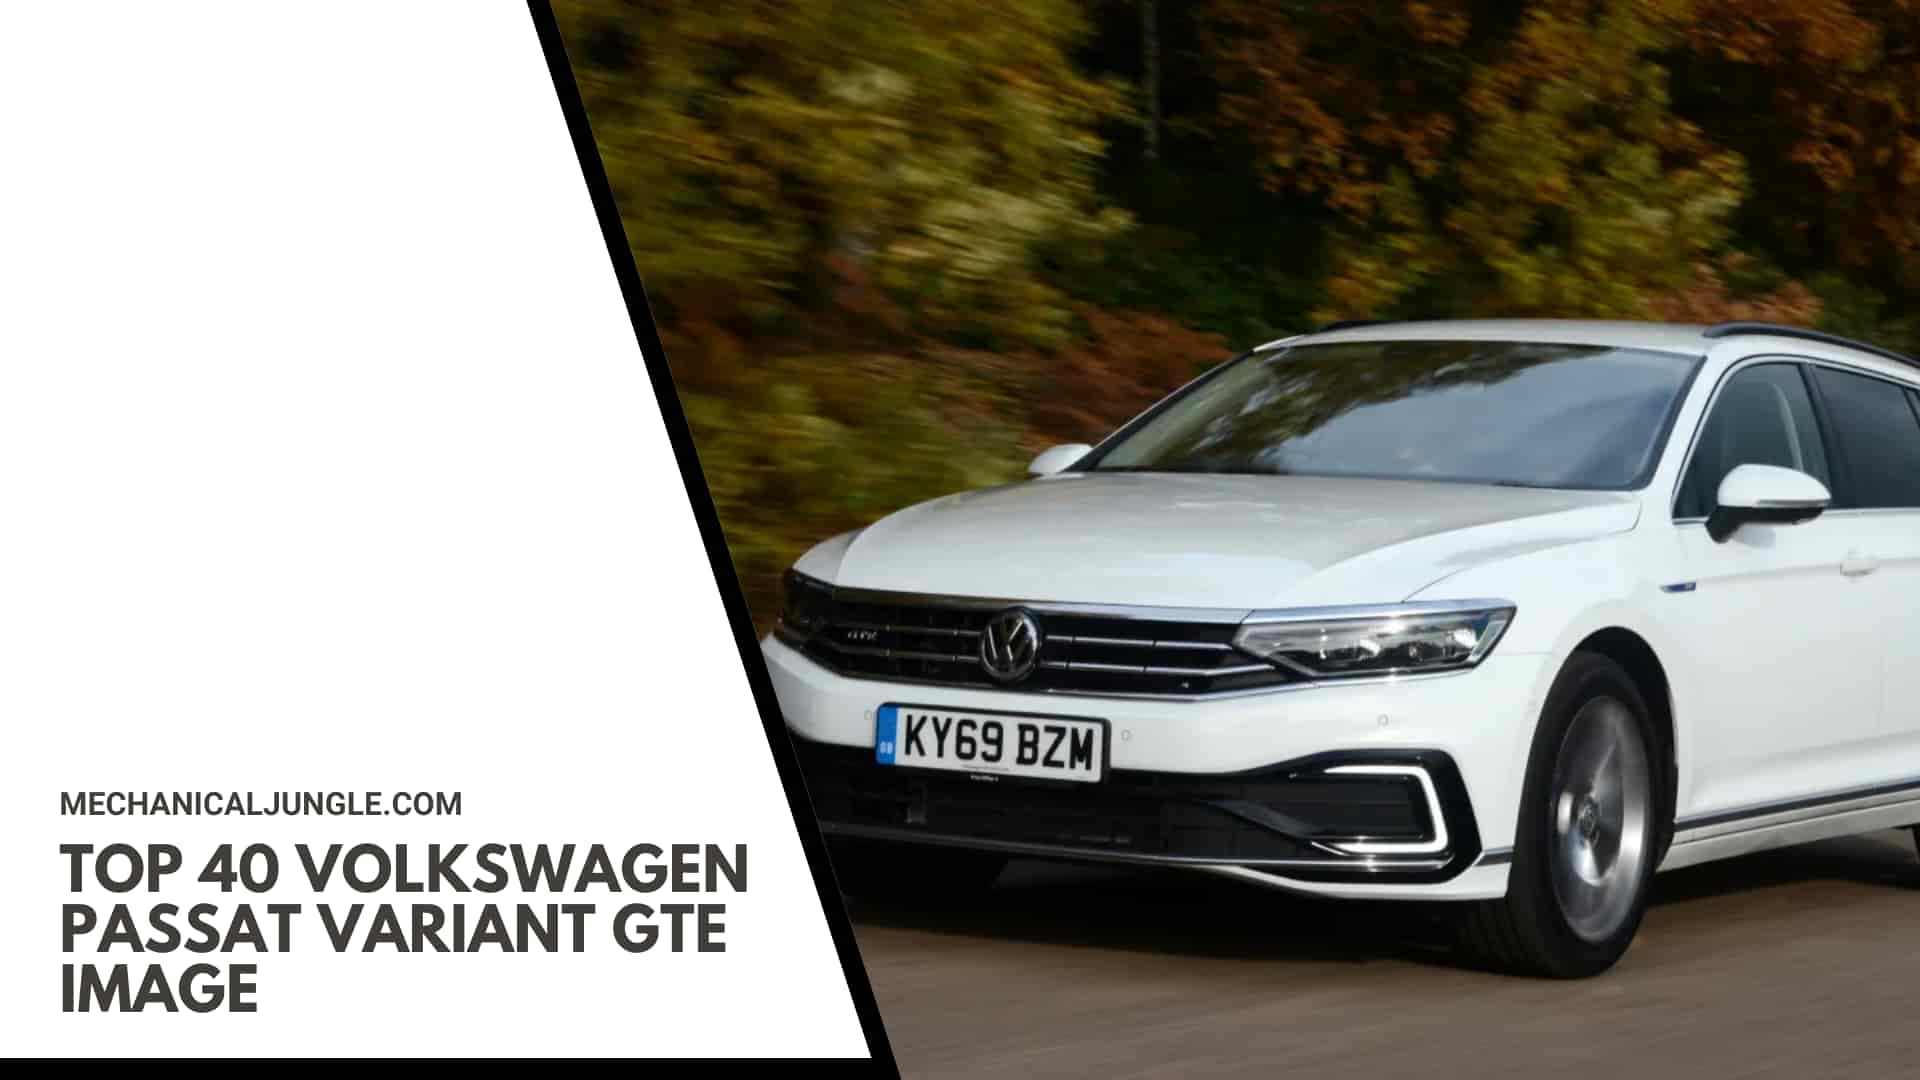 Top 40 Volkswagen Passat Variant GTE Image